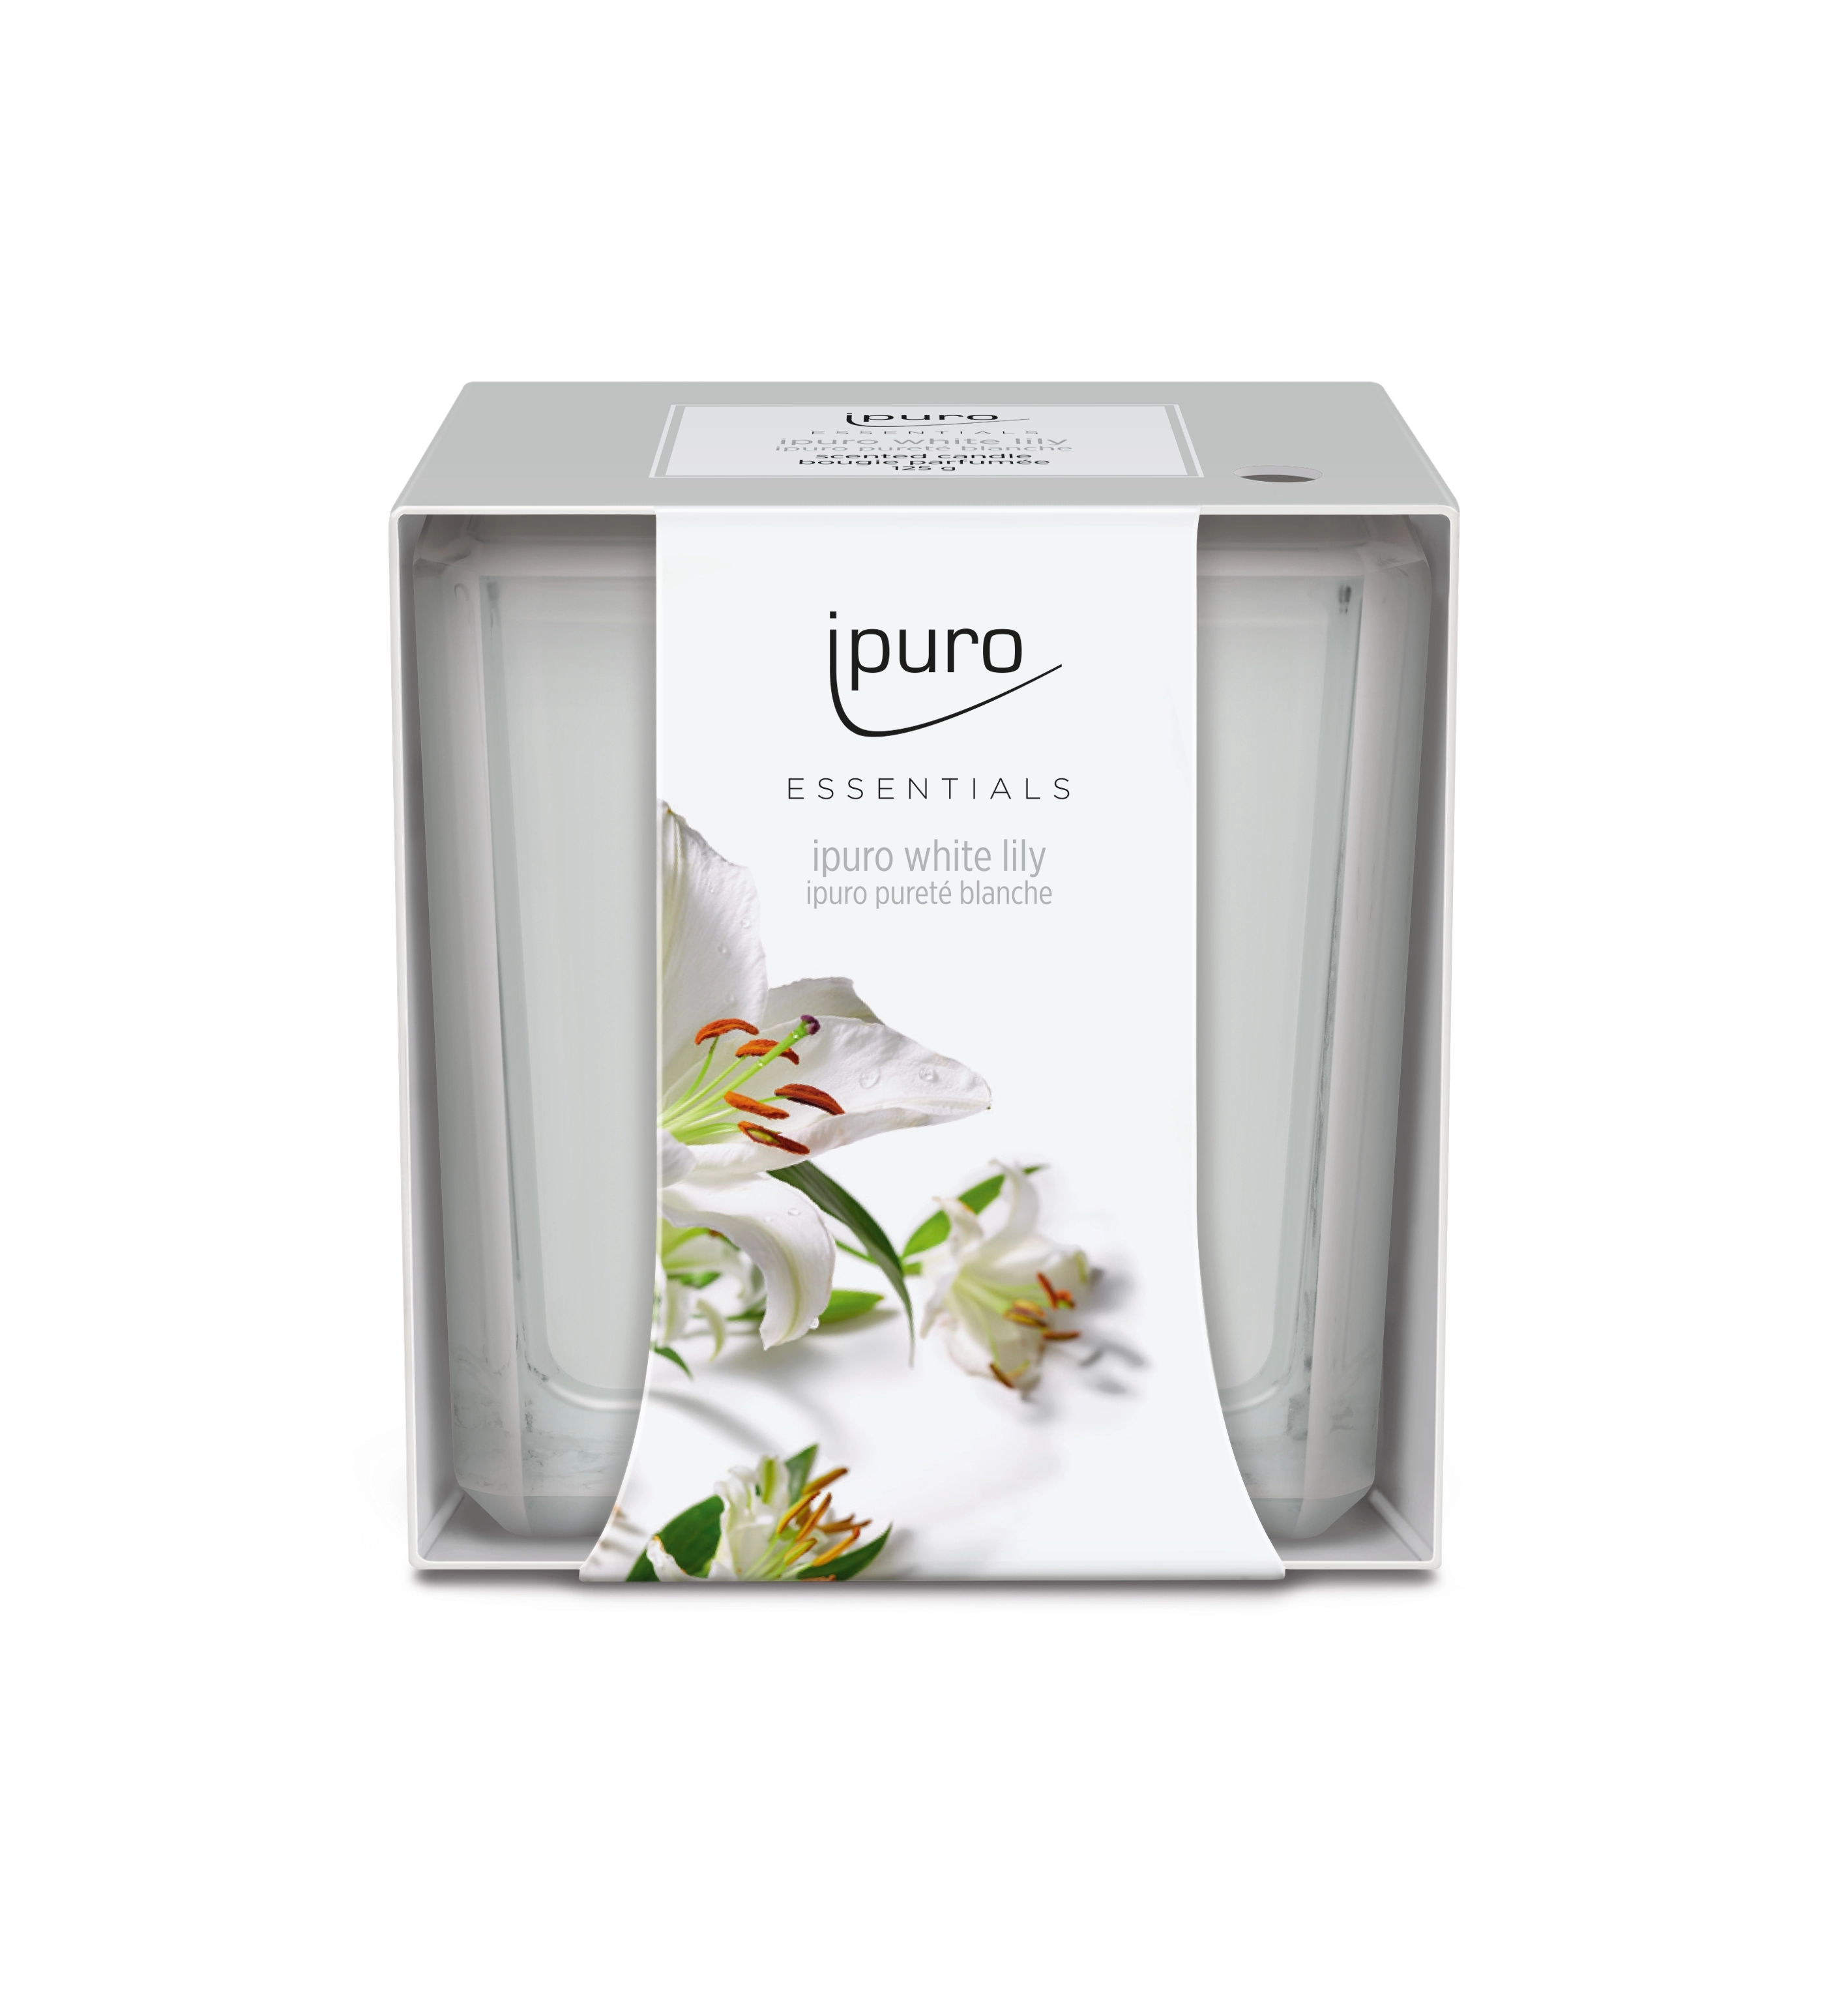 ipuro ESSENTIALS Duftkerze White Lily 125g kaufen bei OBI